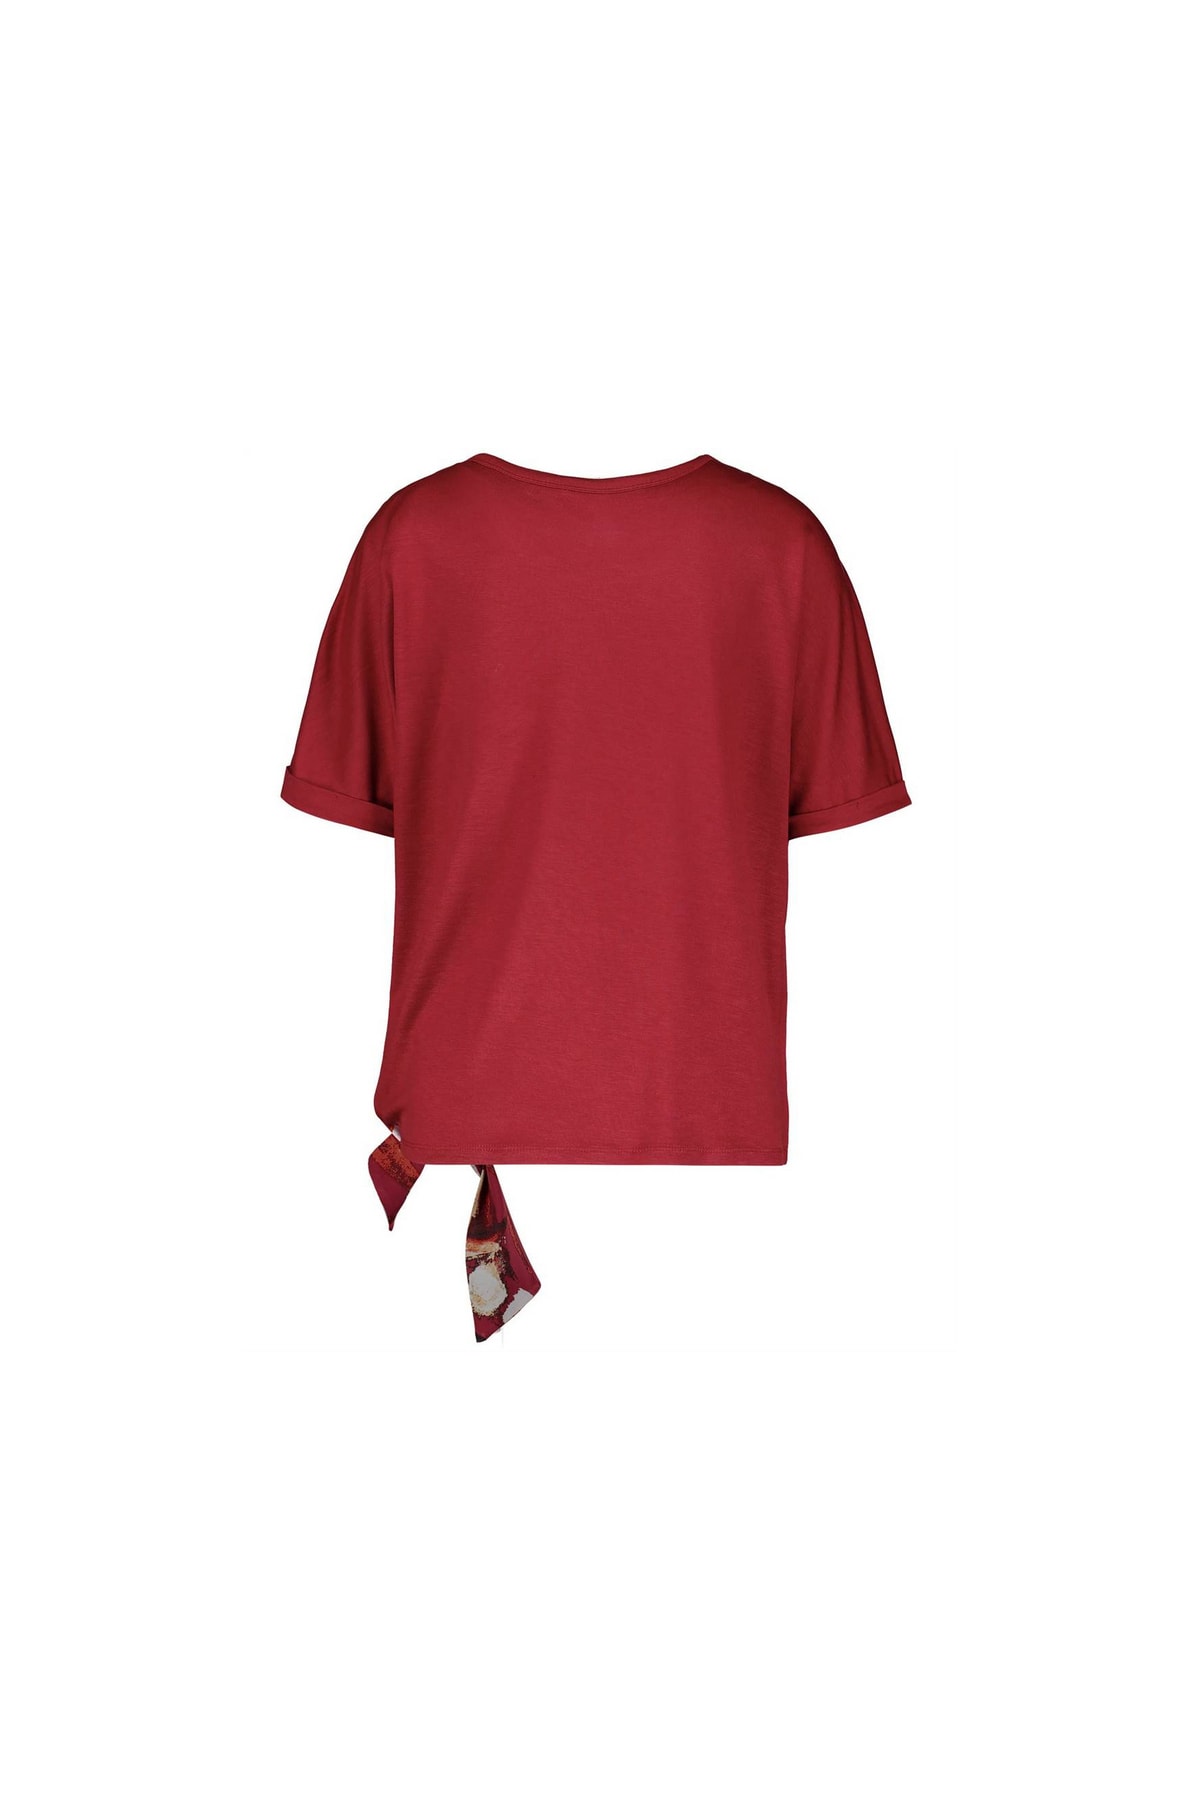 Gerry Weber T-Shirt Mehrfarbig Regular Fit Fast ausverkauft FN8994